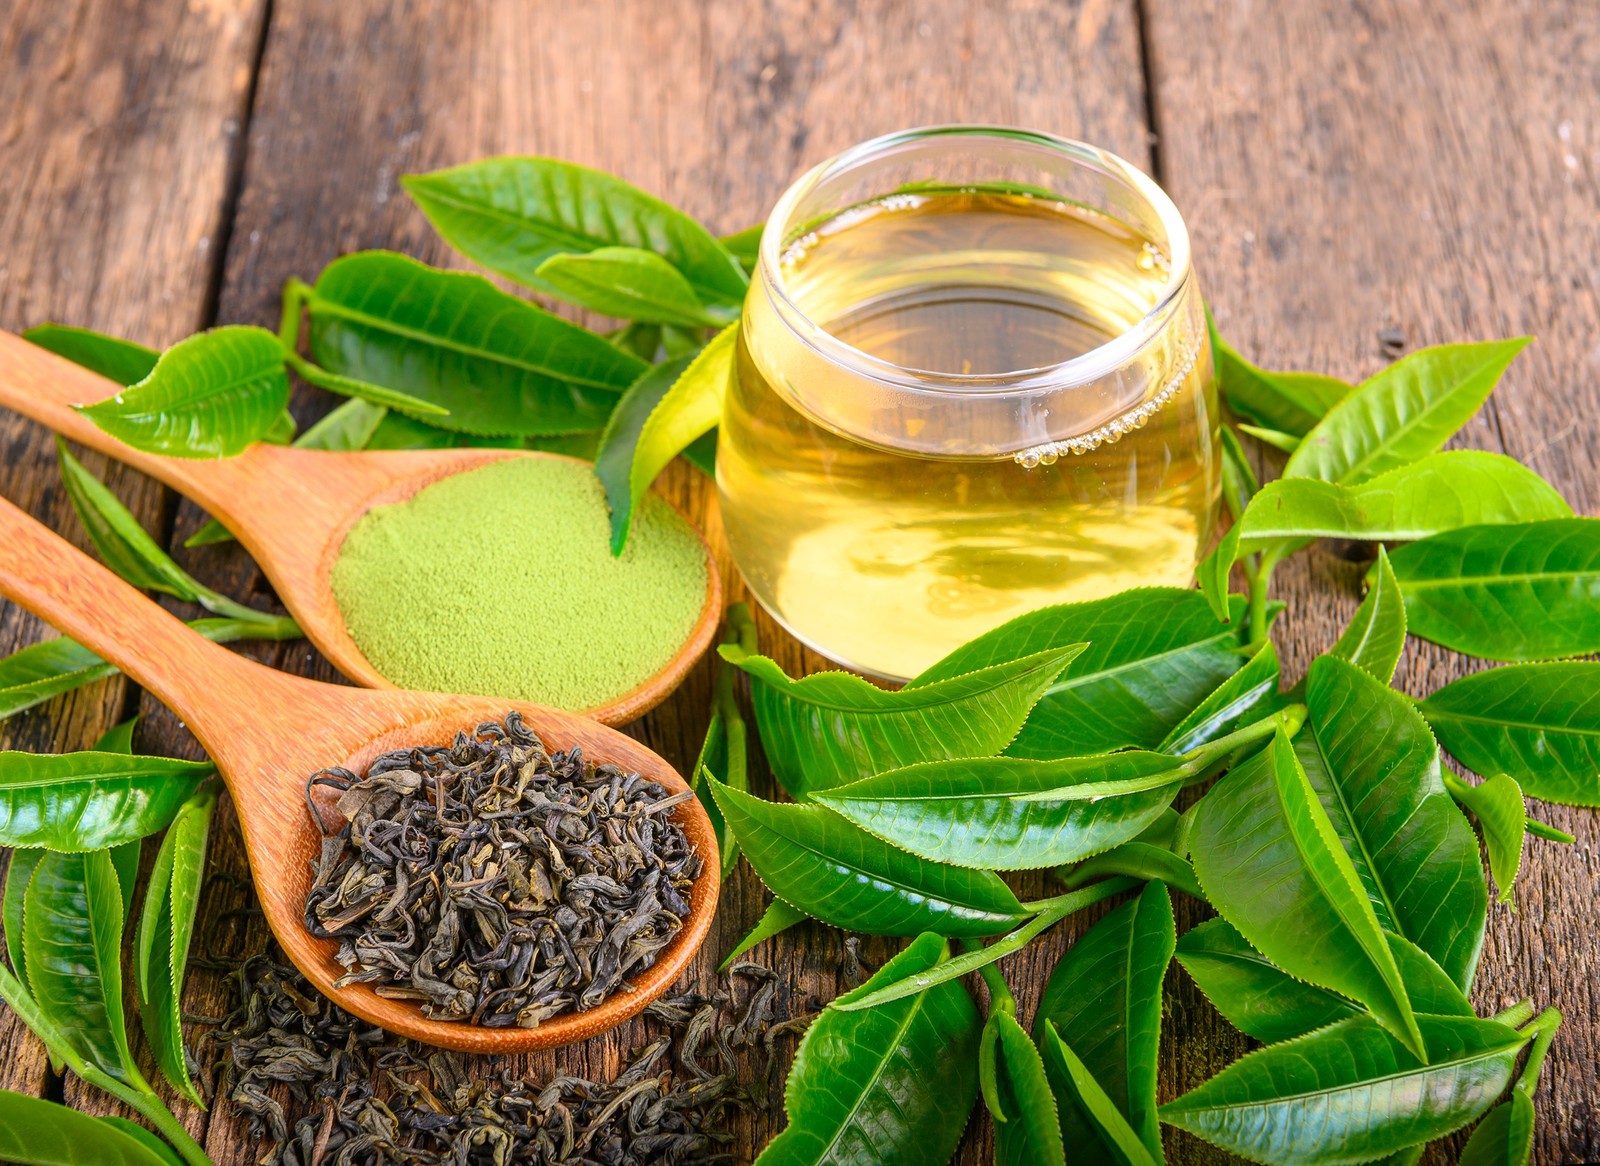 أوراق الشاي الأخضر تعبيرية عن مكملات الوقاية من التهاب المسالك البولية - مصدر الصورة: Shutterstock